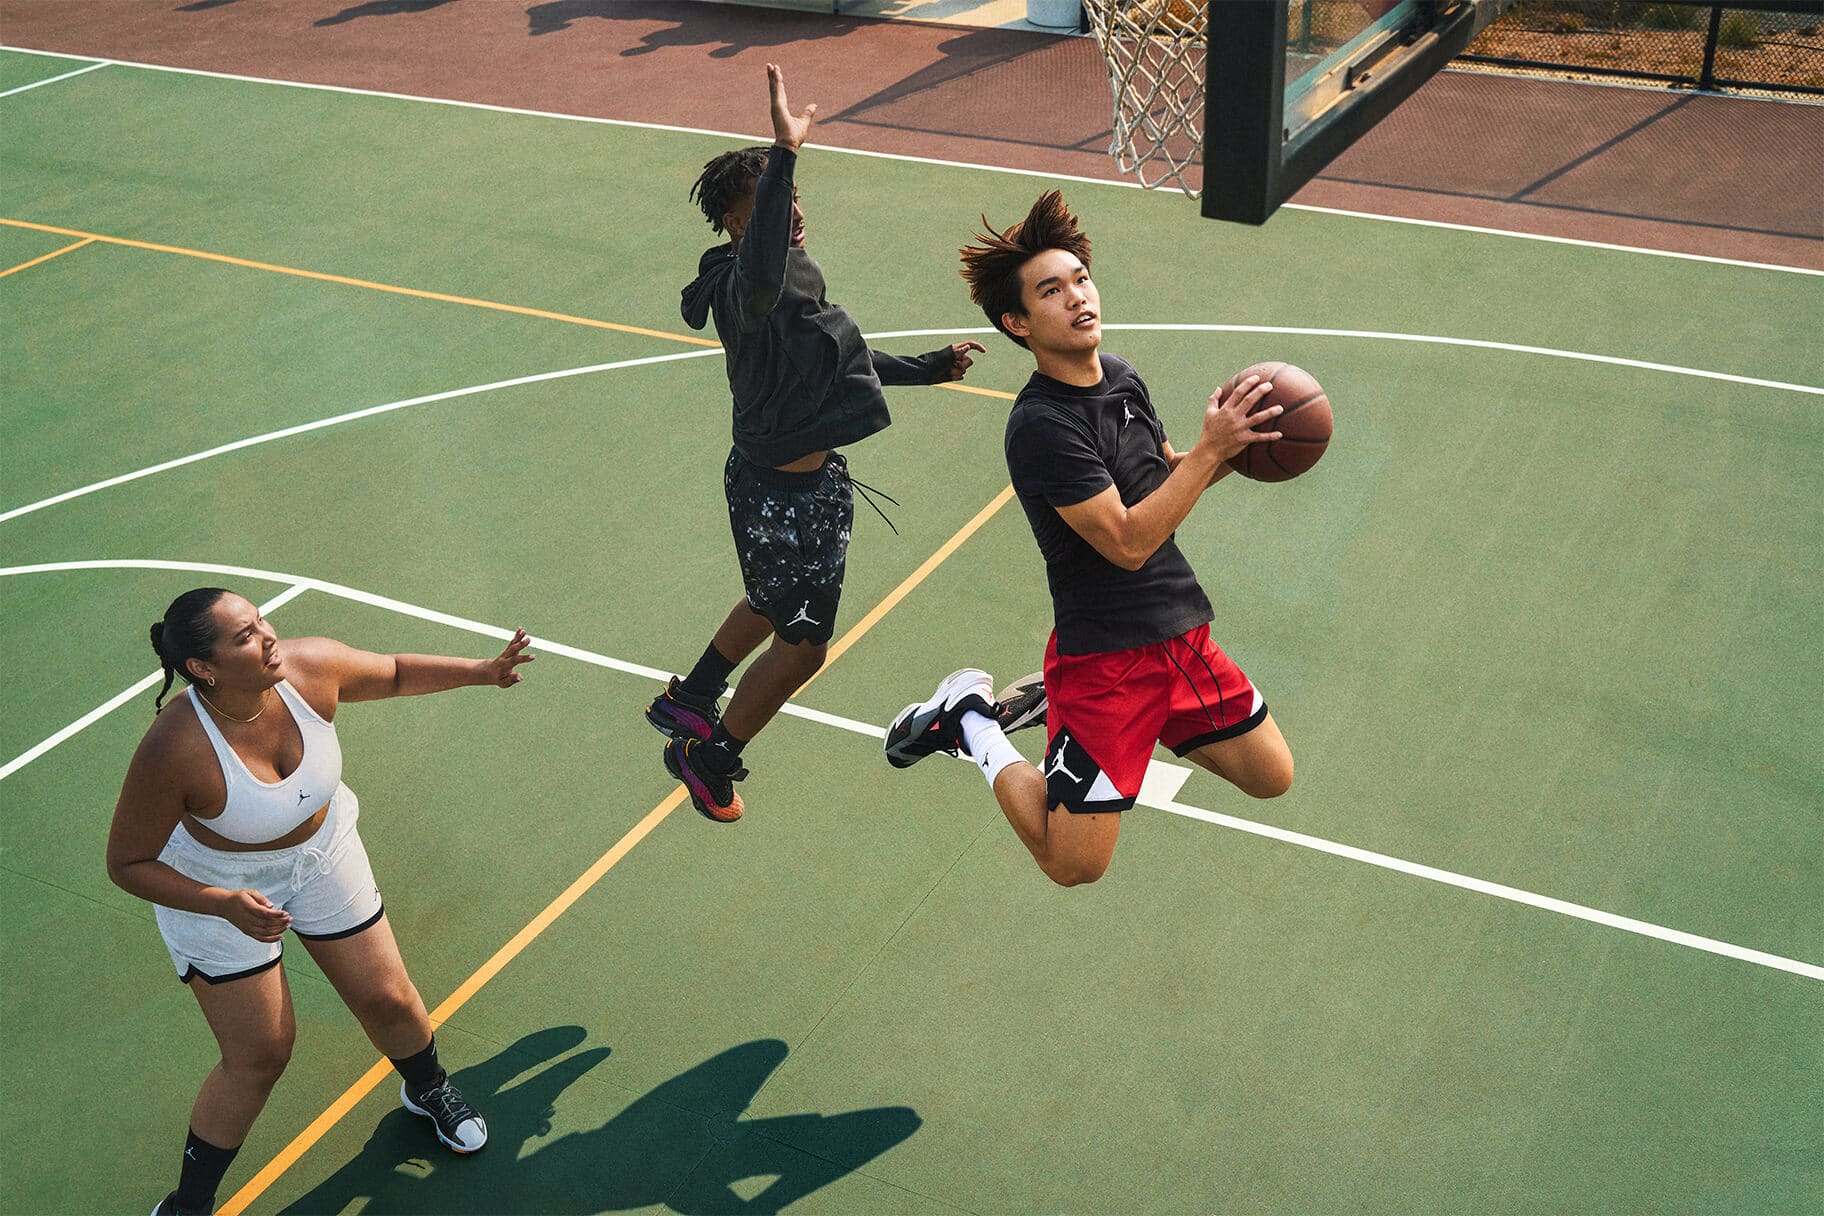 Practica ejercicios para driblar antes de jugar básquetbol. Nike MX